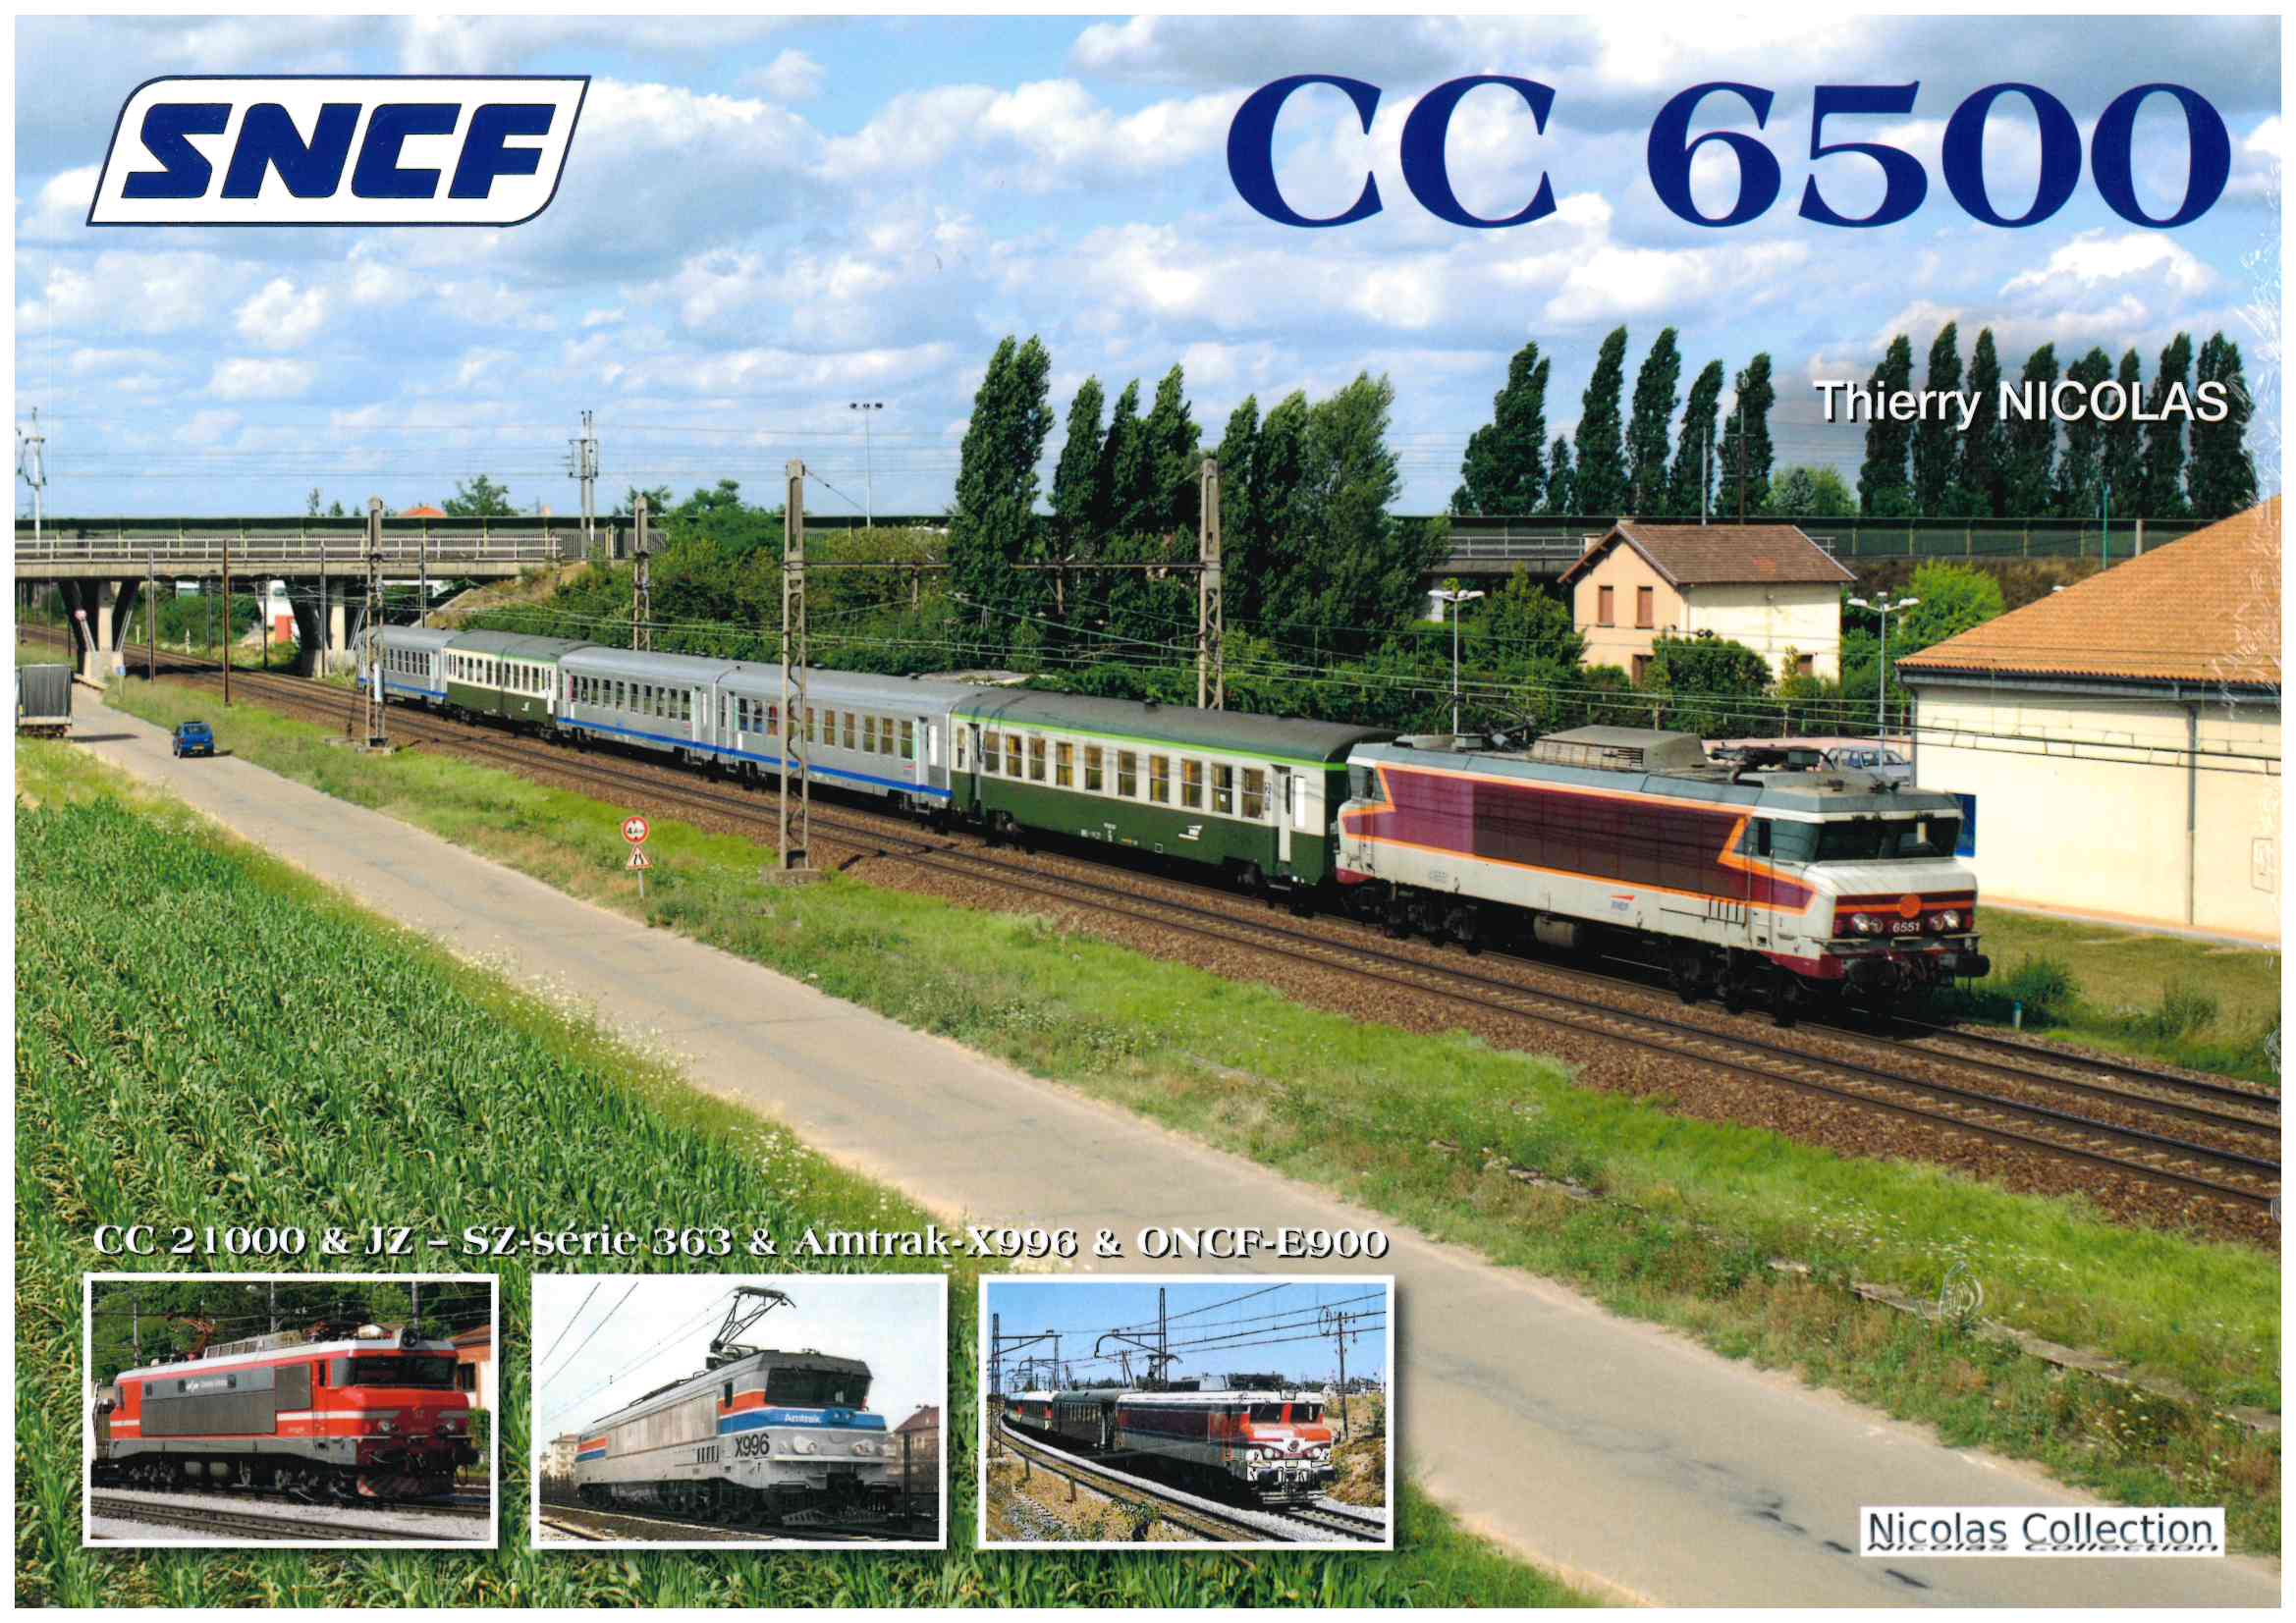 Buch SNCF CC 6500 CC 21000 & JZ - SZ-série 363 & Amtrak X996 & ONCF-E900 - Thierry Nicolas Collection